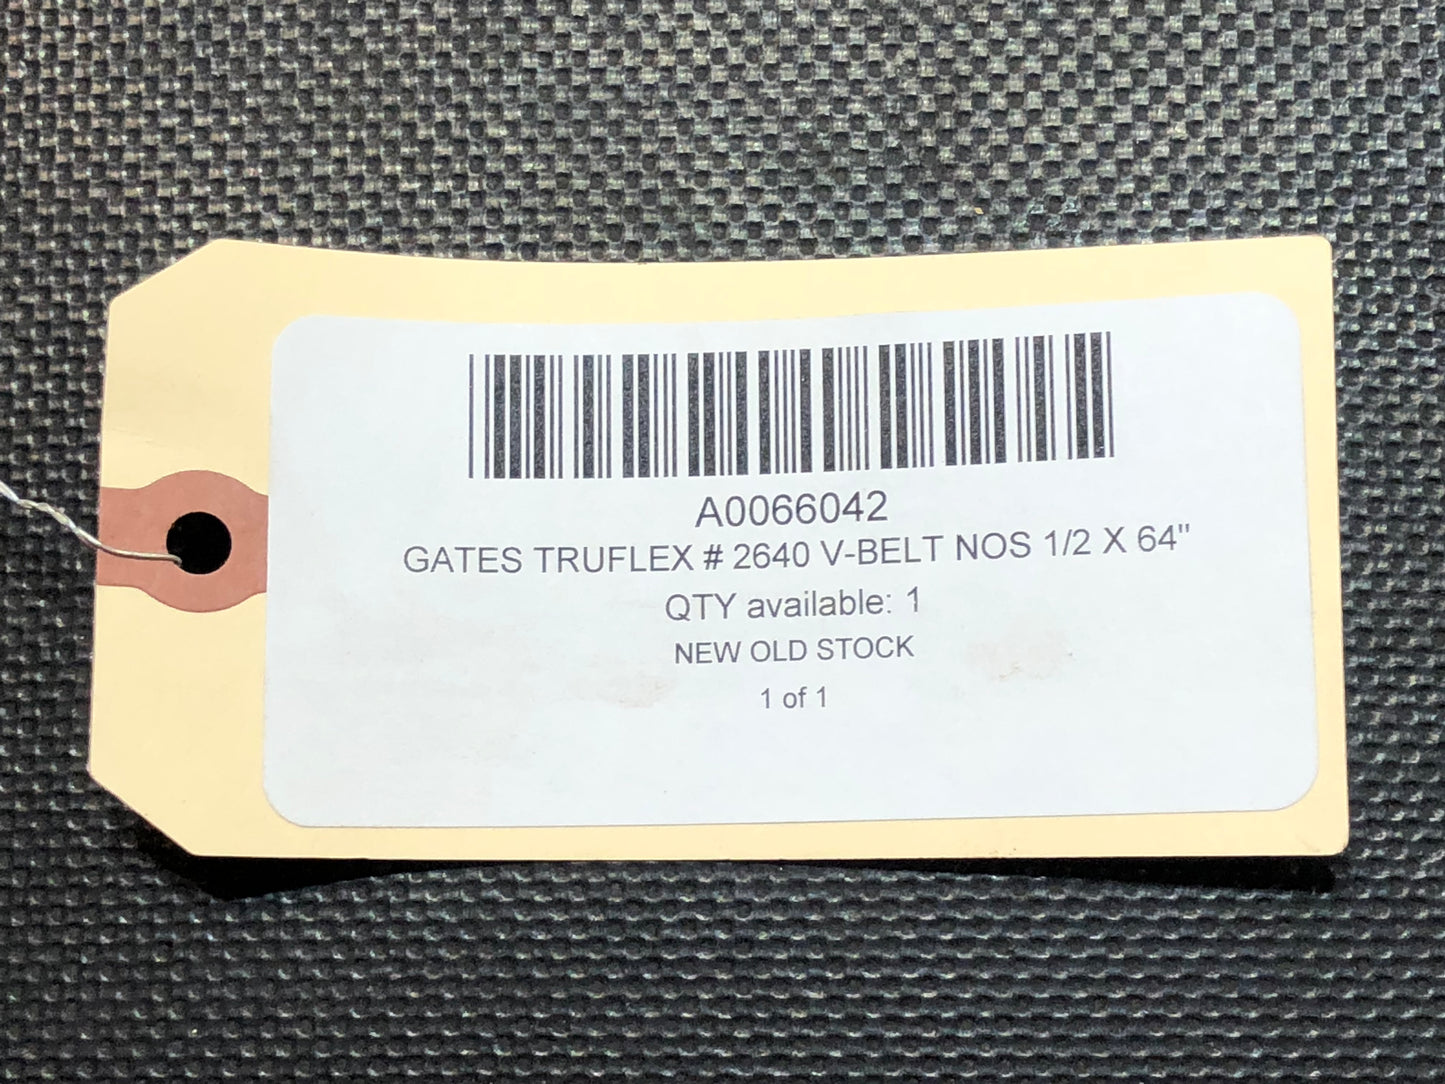 Gates Truflex # 2640 V-Belt NOS 1/2 X 64"